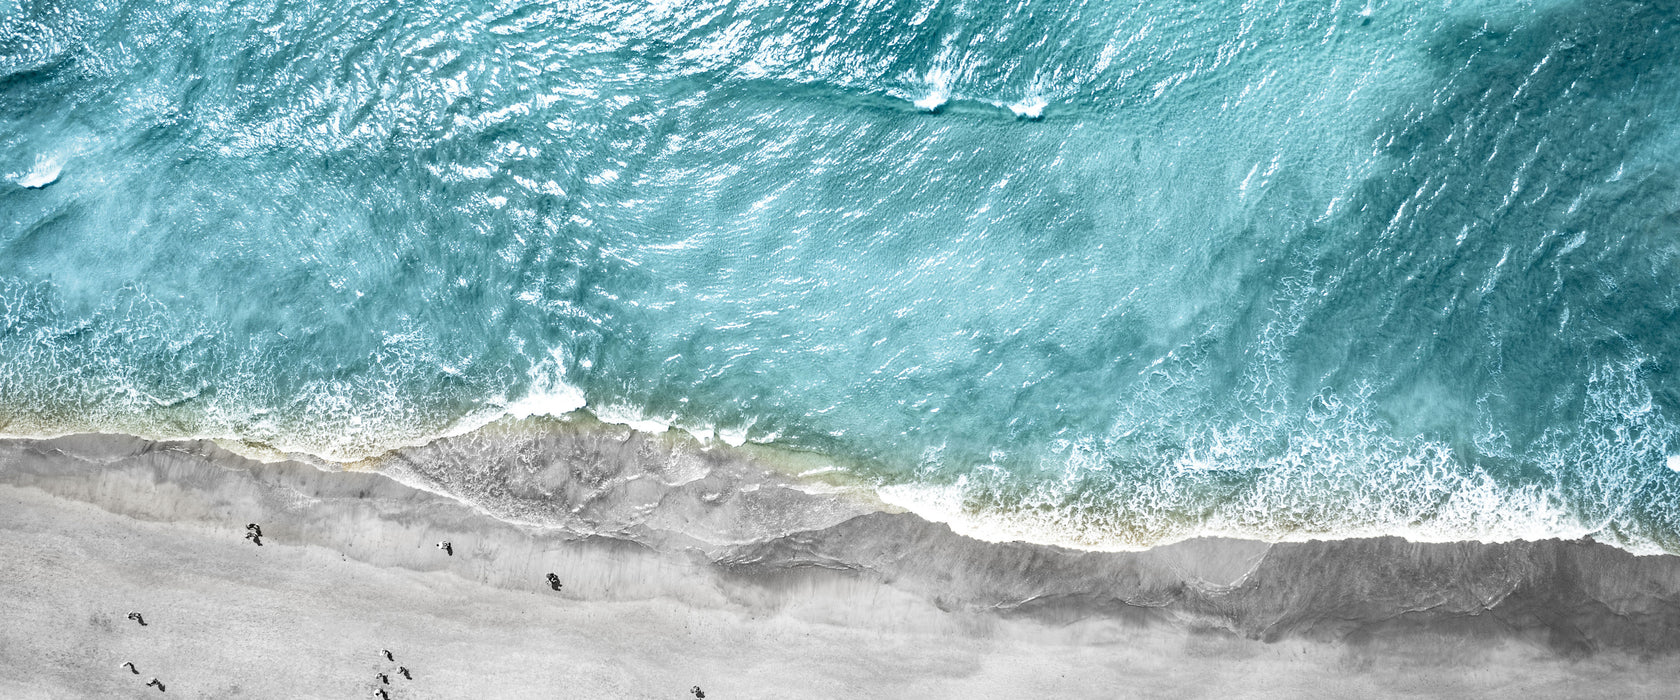 Luftaufnahme von türkisem Meer am Strand B&W Detail, Glasbild Panorama